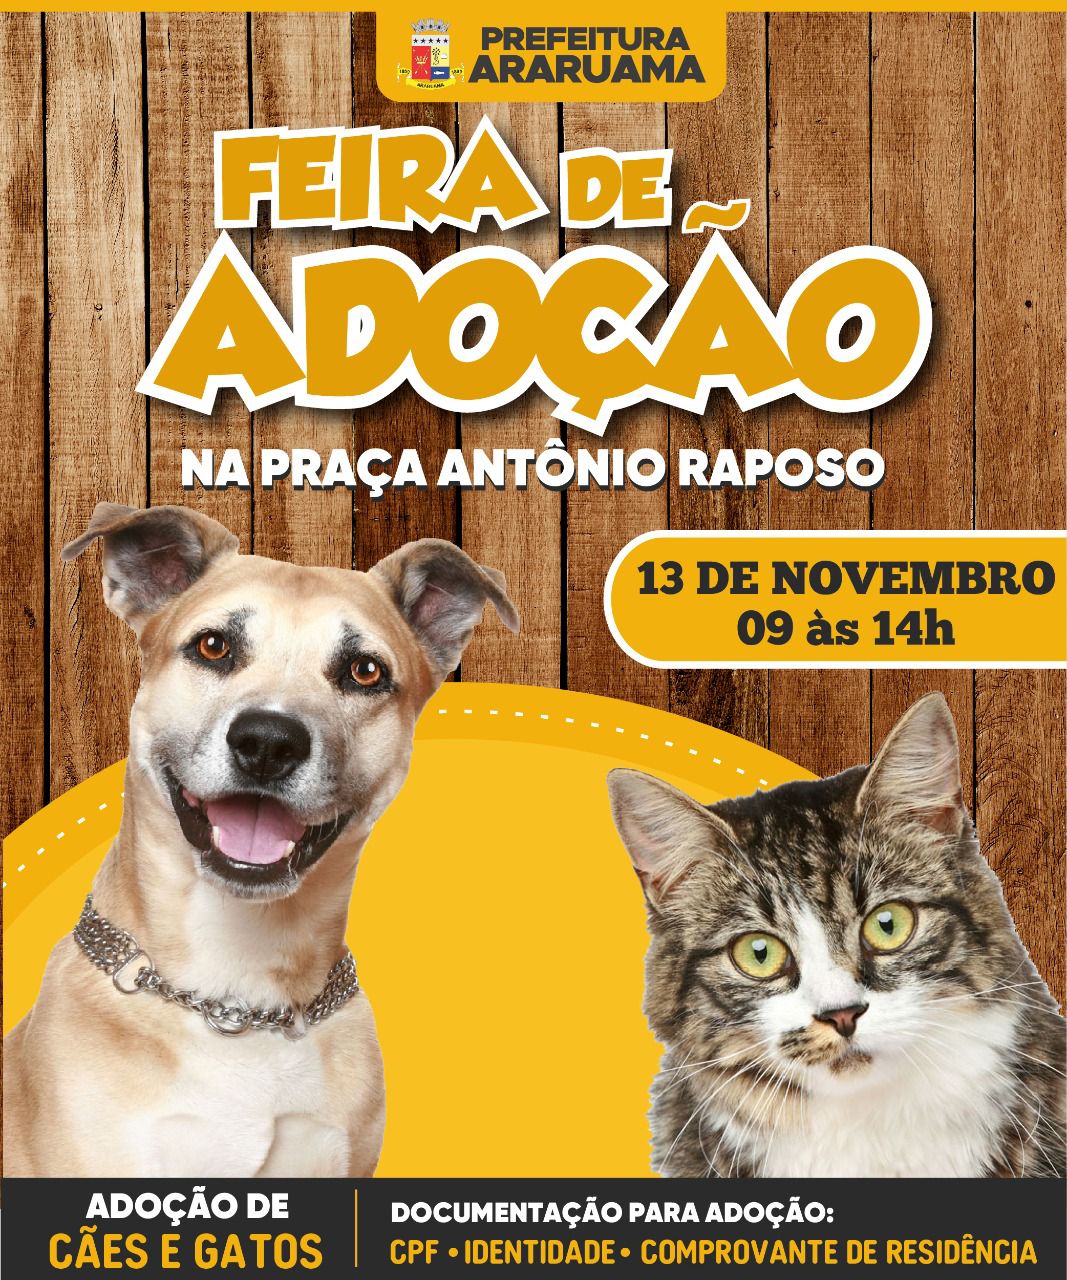 Prefeitura de Araruama vai realizar Feira de Adoção de cães e gatos na Praça Antônio Raposo